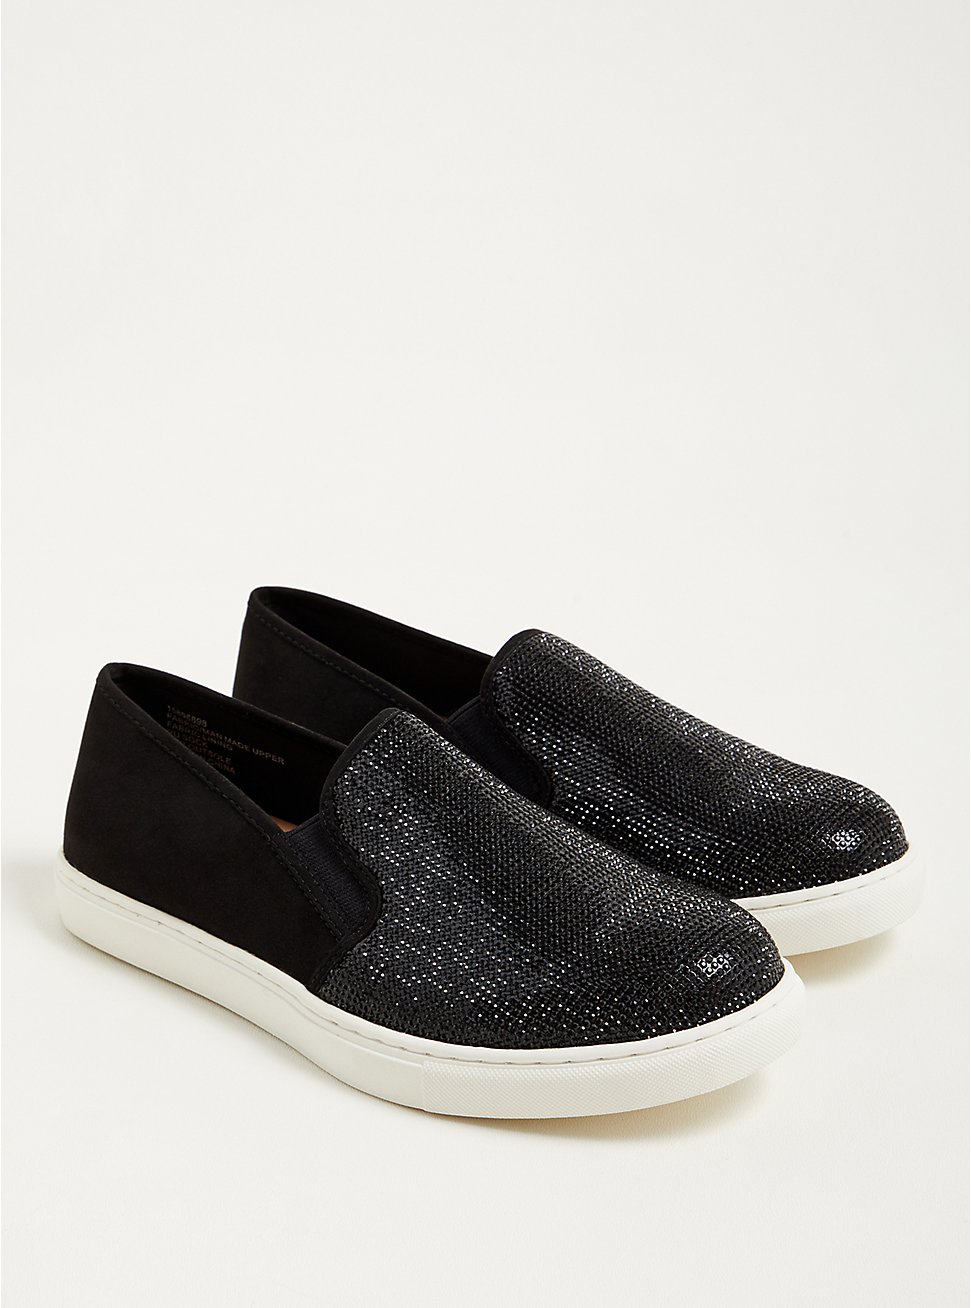 Embellished Slip-On Sneaker - Black (WW), BLACK, hi-res